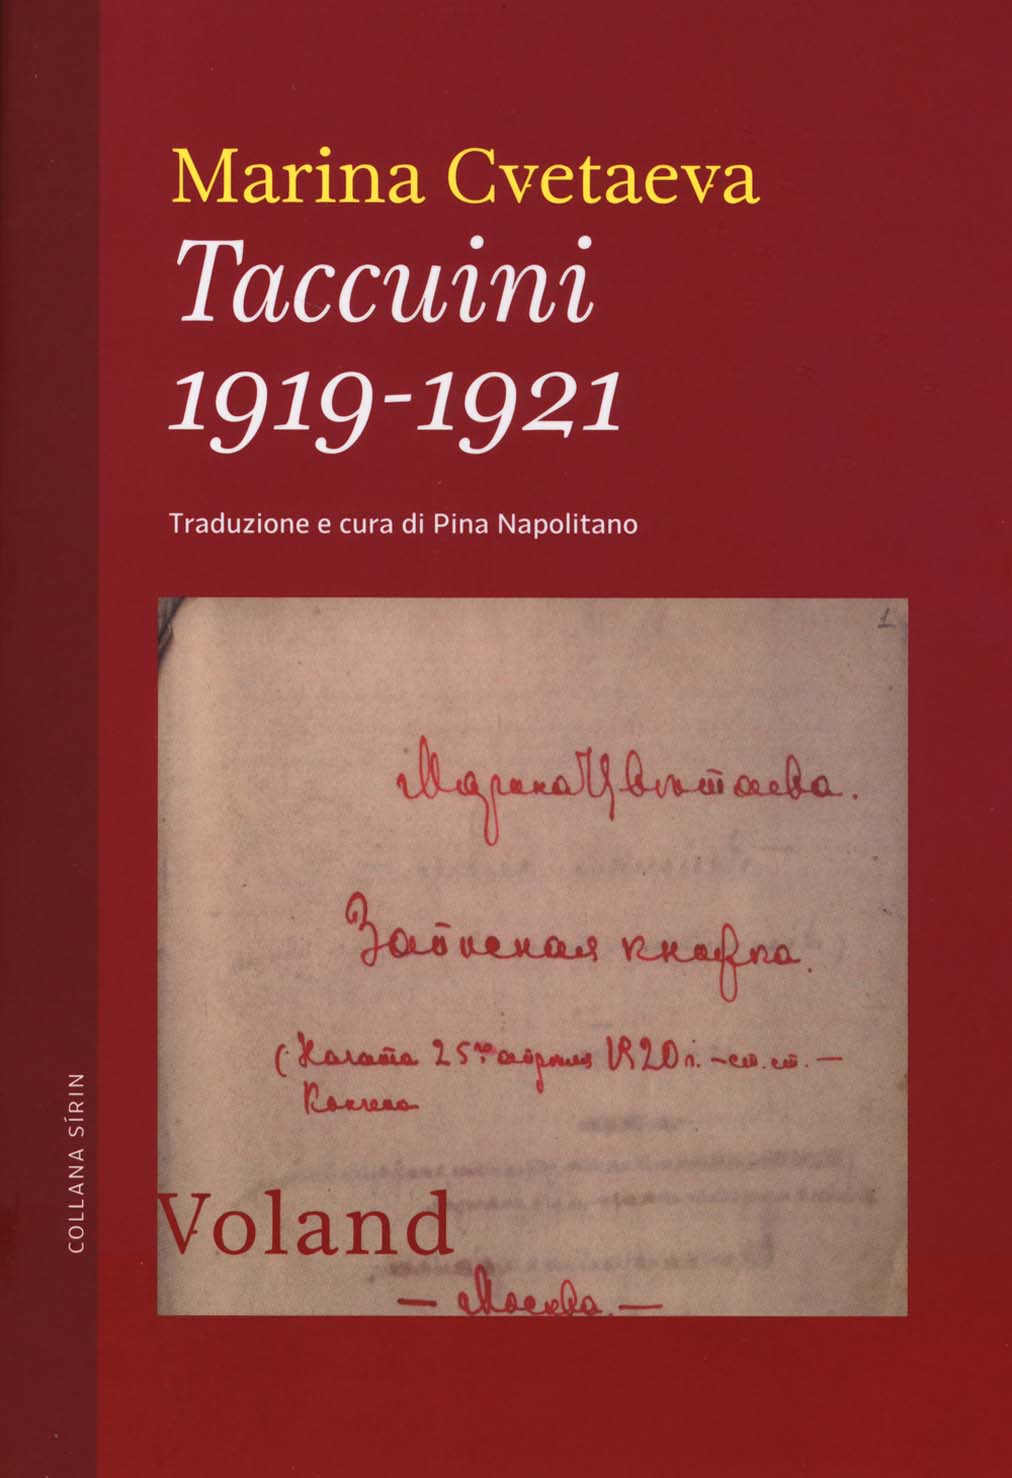 Libri Marina Cvetaeva - Taccuini 1919-1921 NUOVO SIGILLATO, EDIZIONE DEL 27/02/2014 SUBITO DISPONIBILE